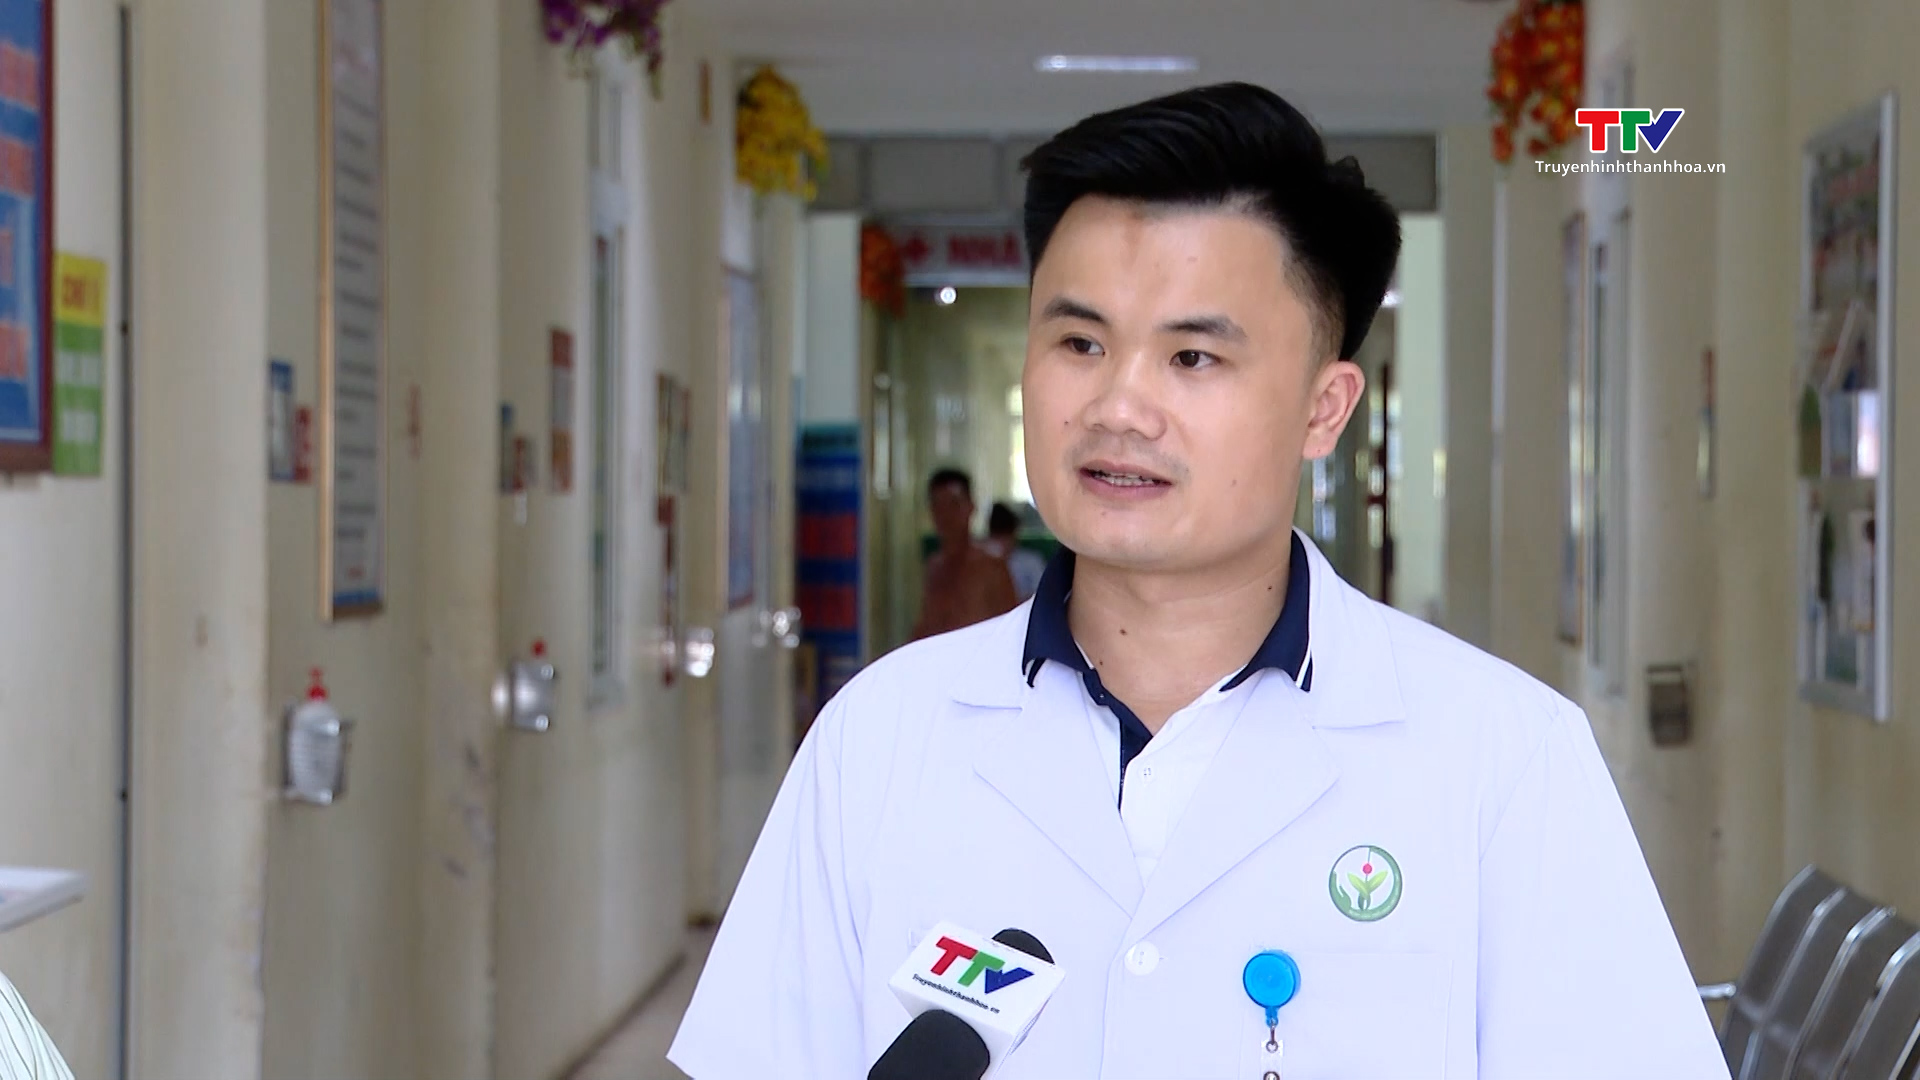 Dự án 585 làm thay đổi Bệnh viện Đa khoa huyện Như Xuân - Ảnh 3.